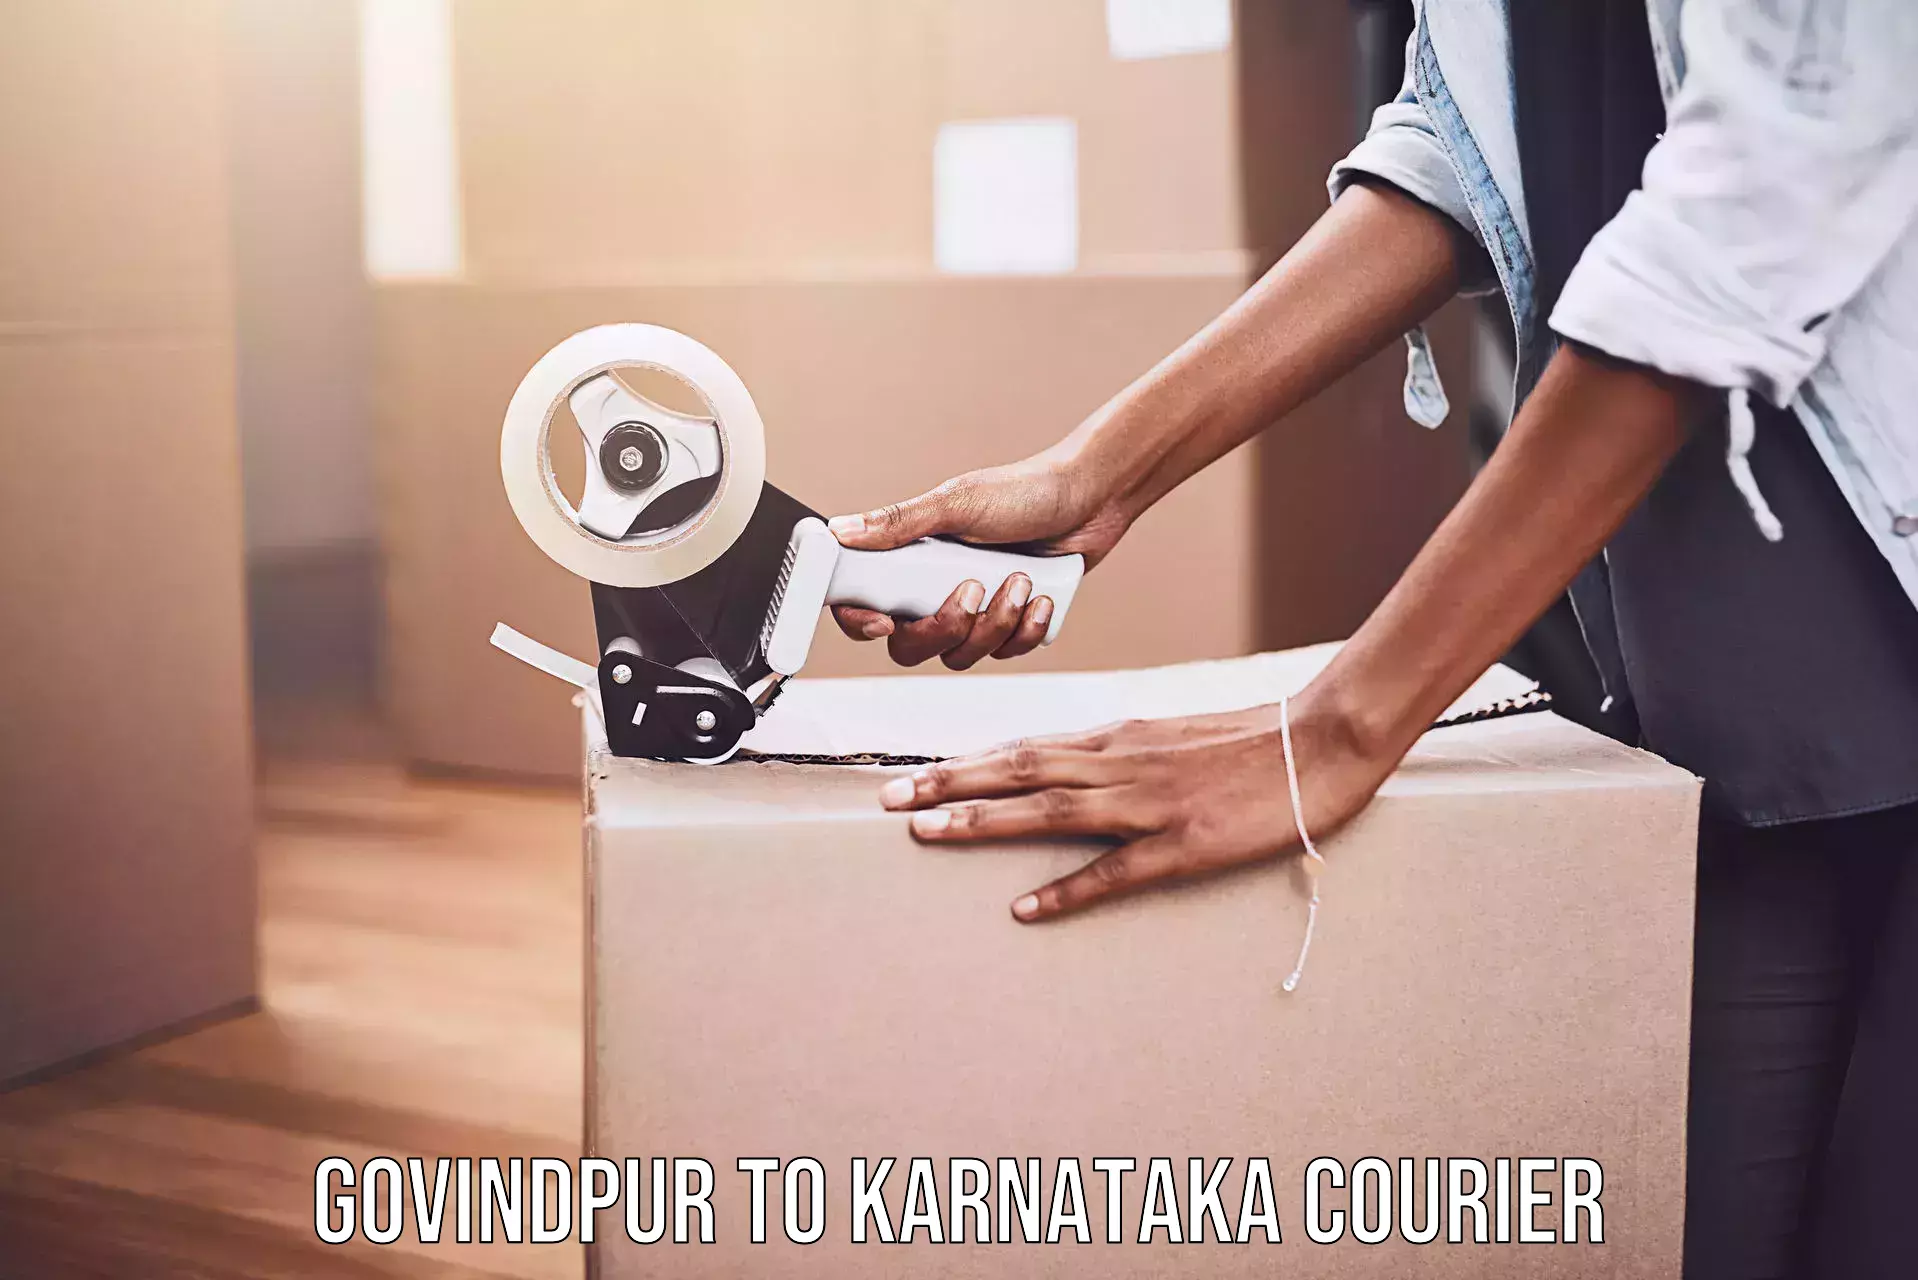 Overnight delivery services Govindpur to Karnataka